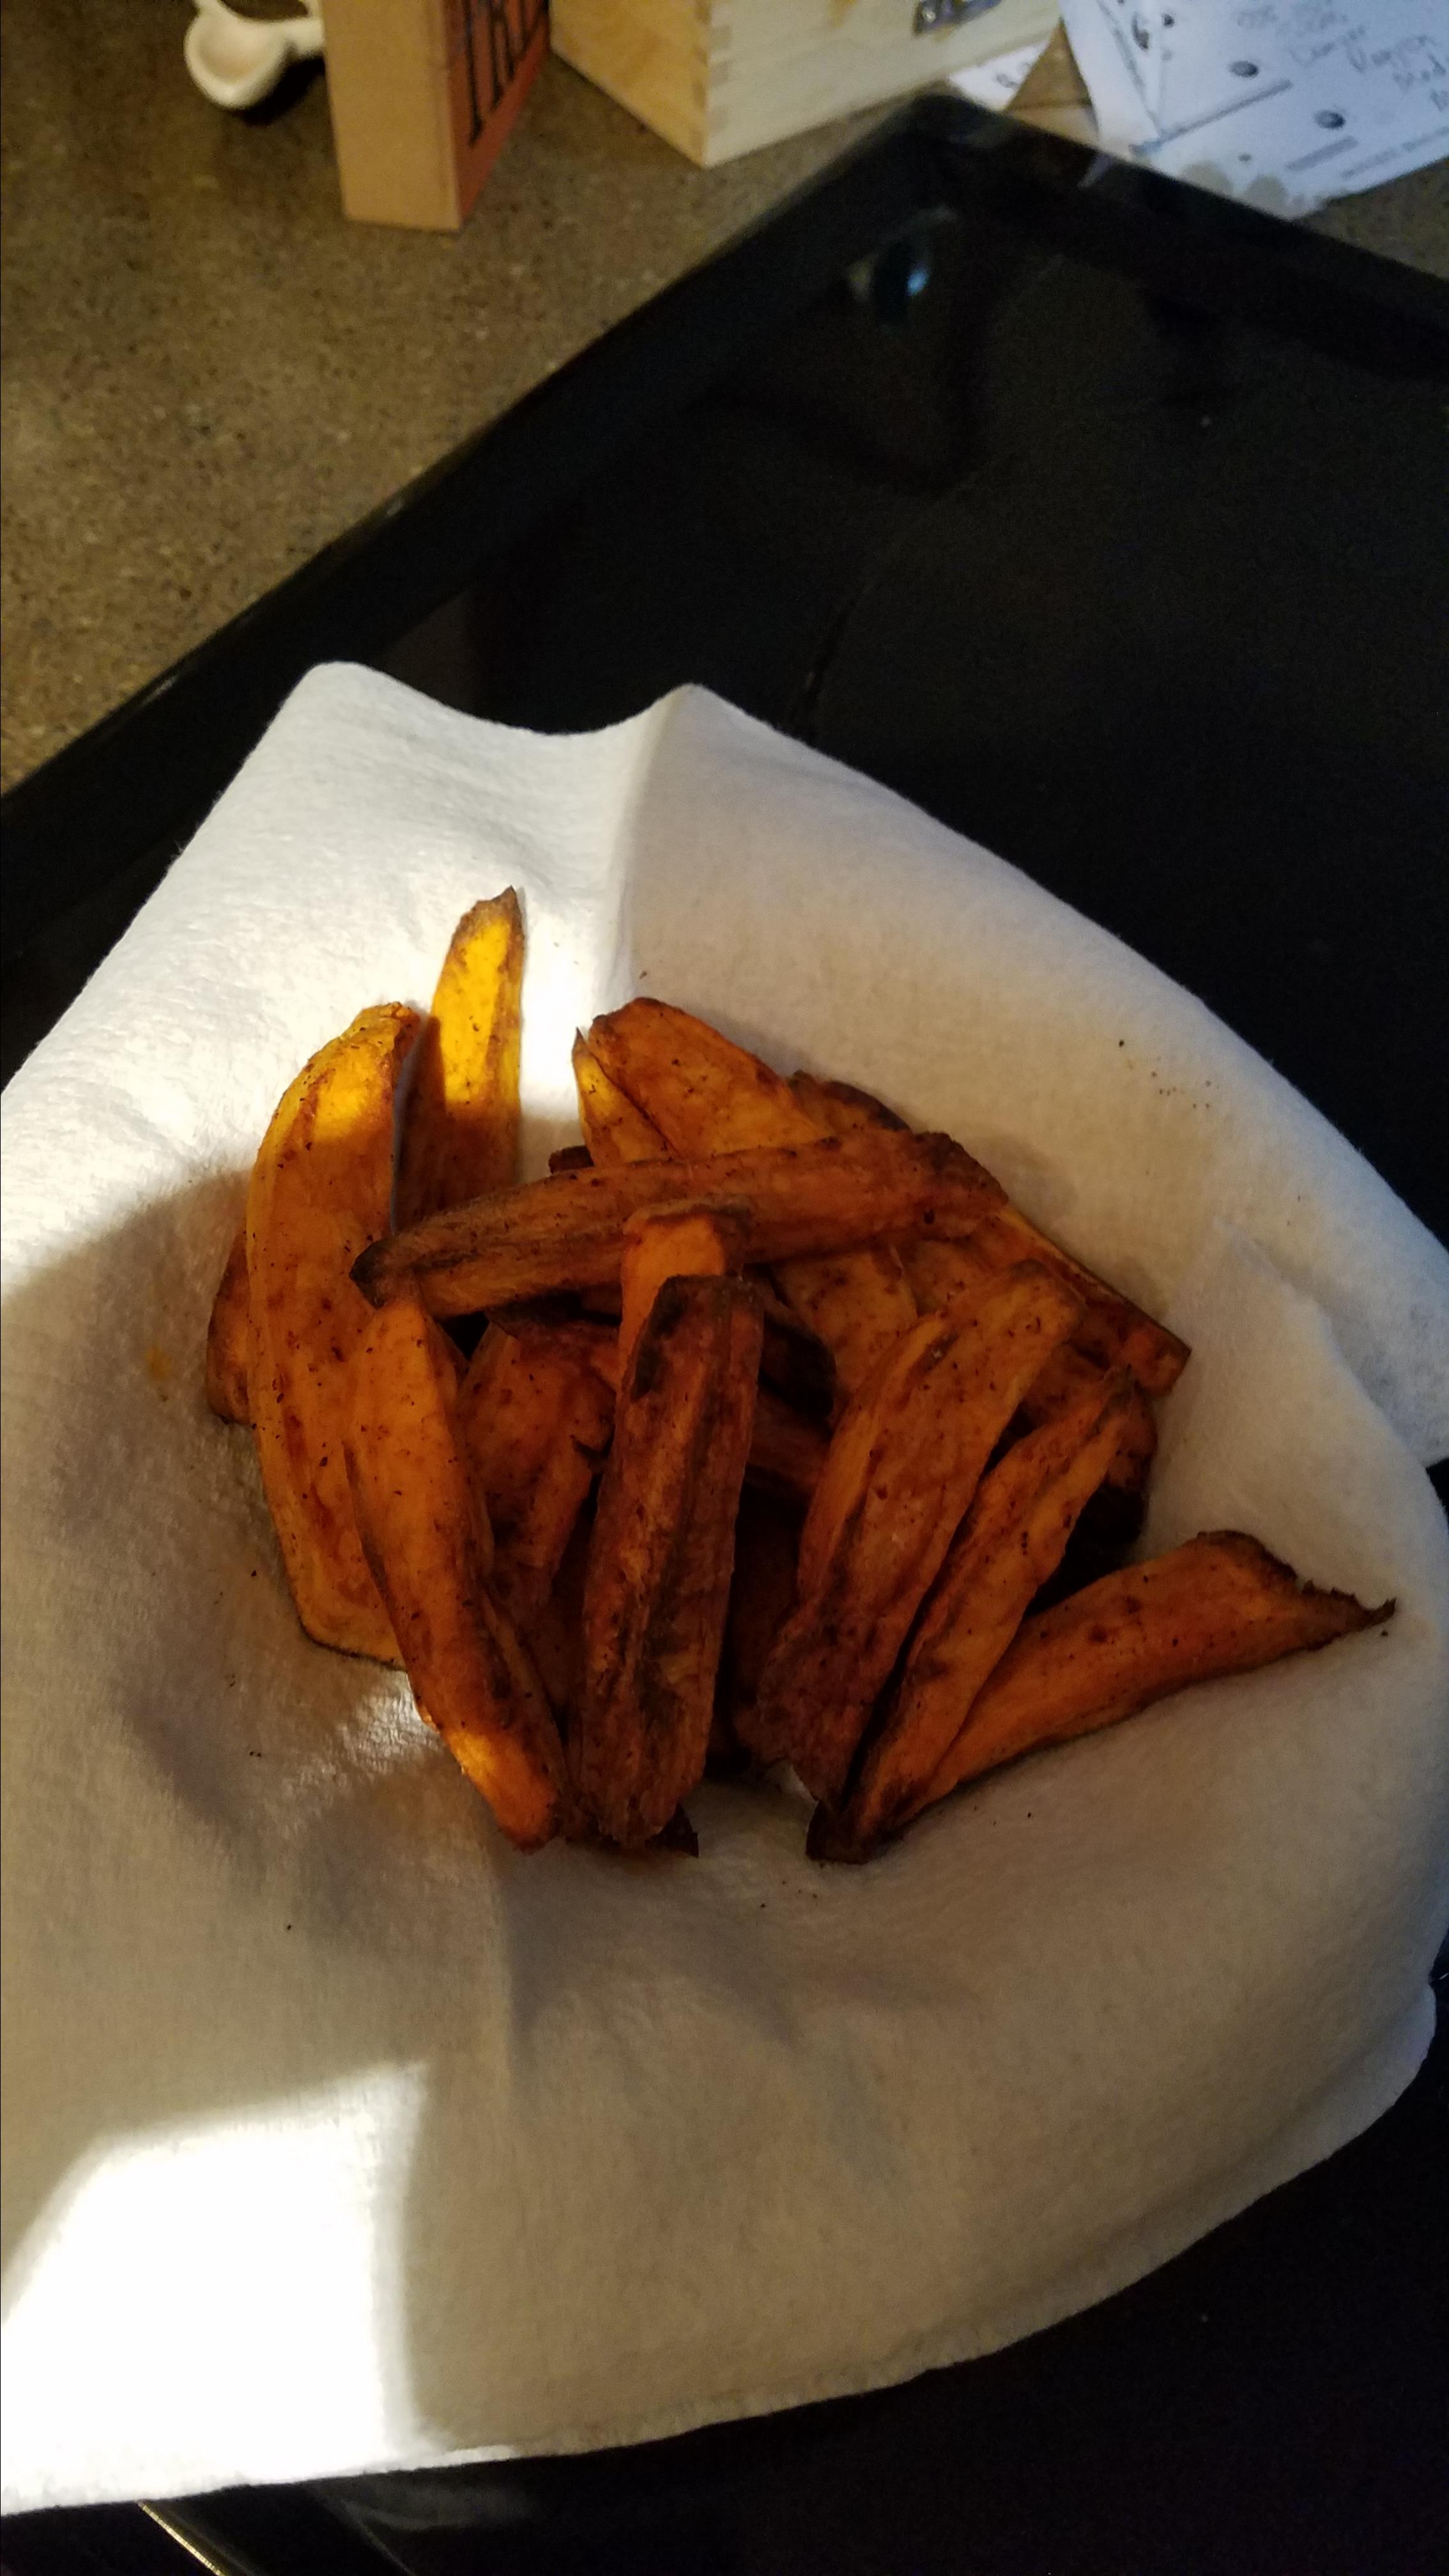 Air Fryer Sweet Potato Fries 